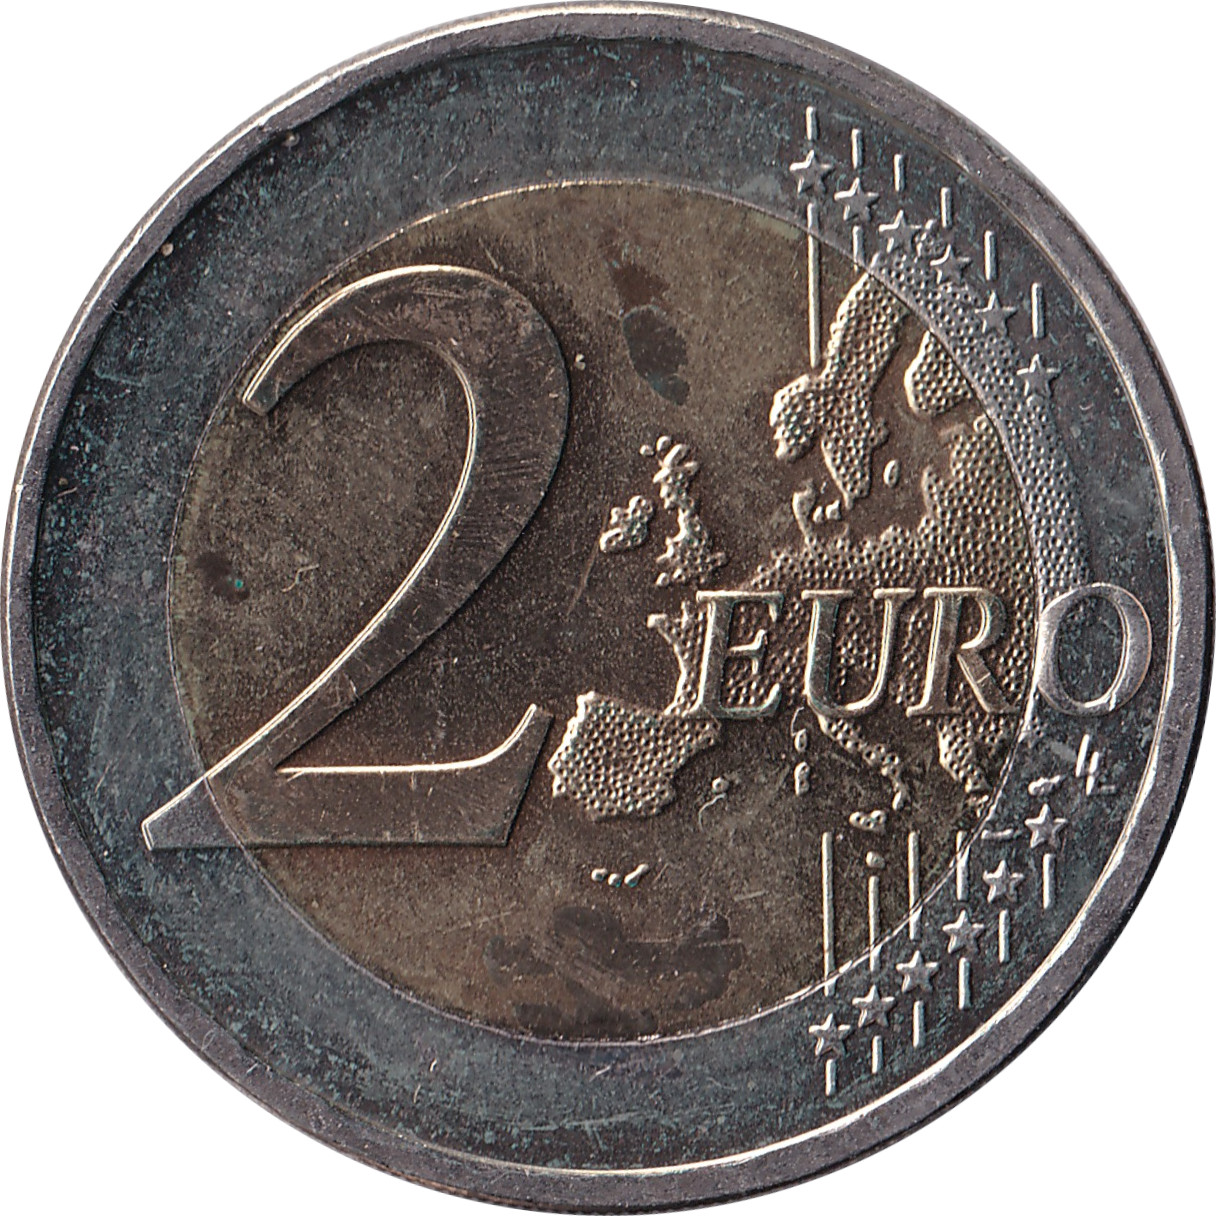 2 euro - Traité de Rome - Allemagne